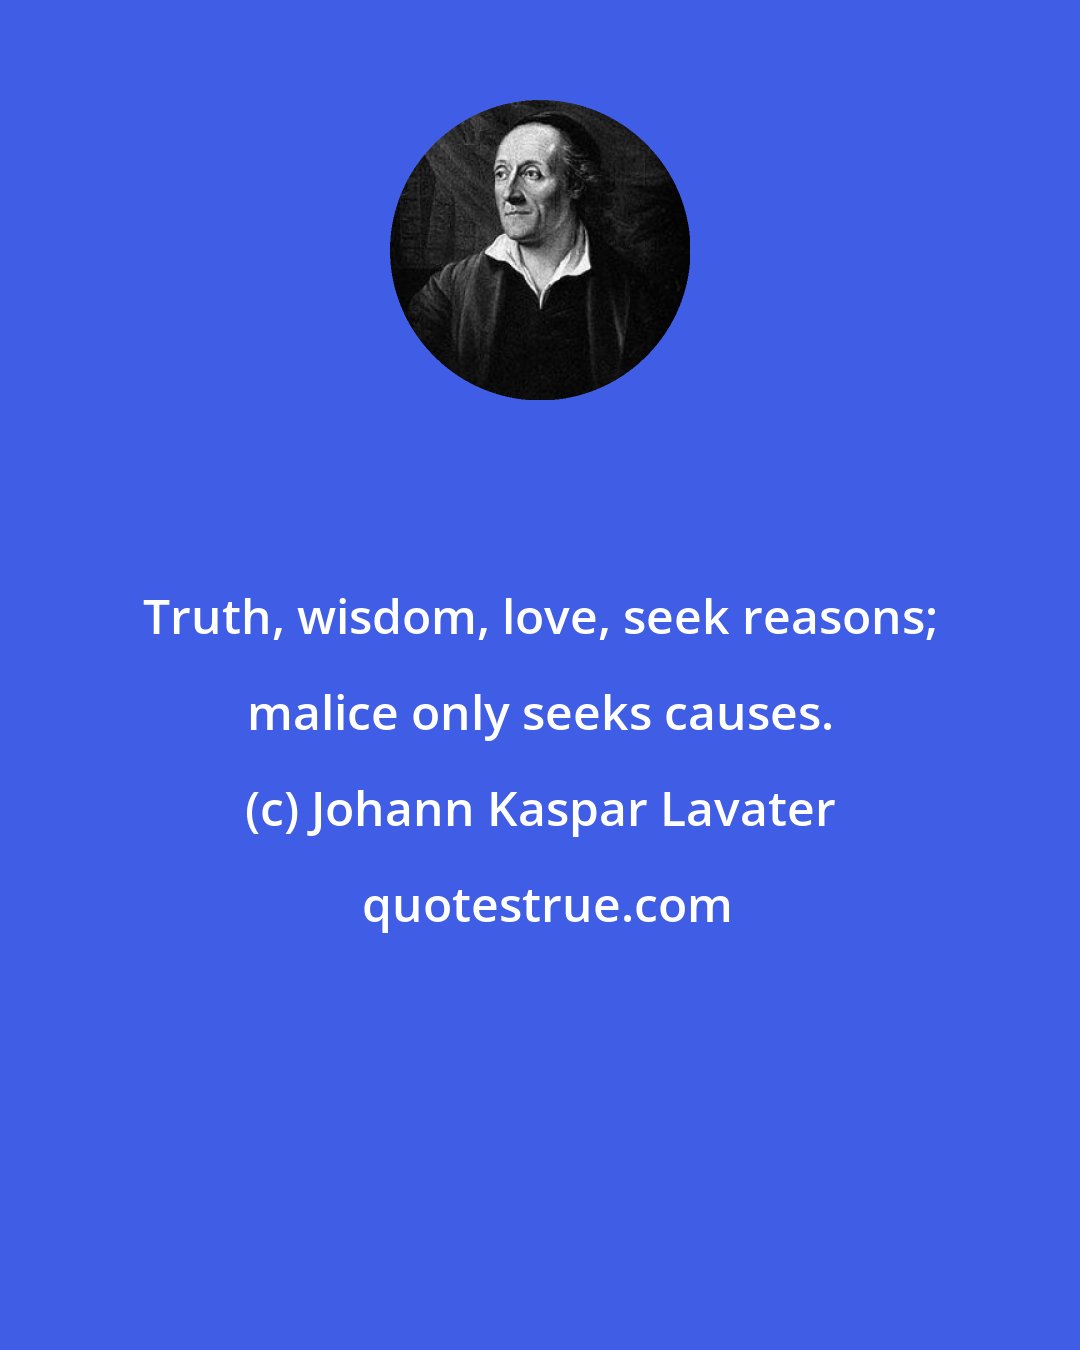 Johann Kaspar Lavater: Truth, wisdom, love, seek reasons; malice only seeks causes.